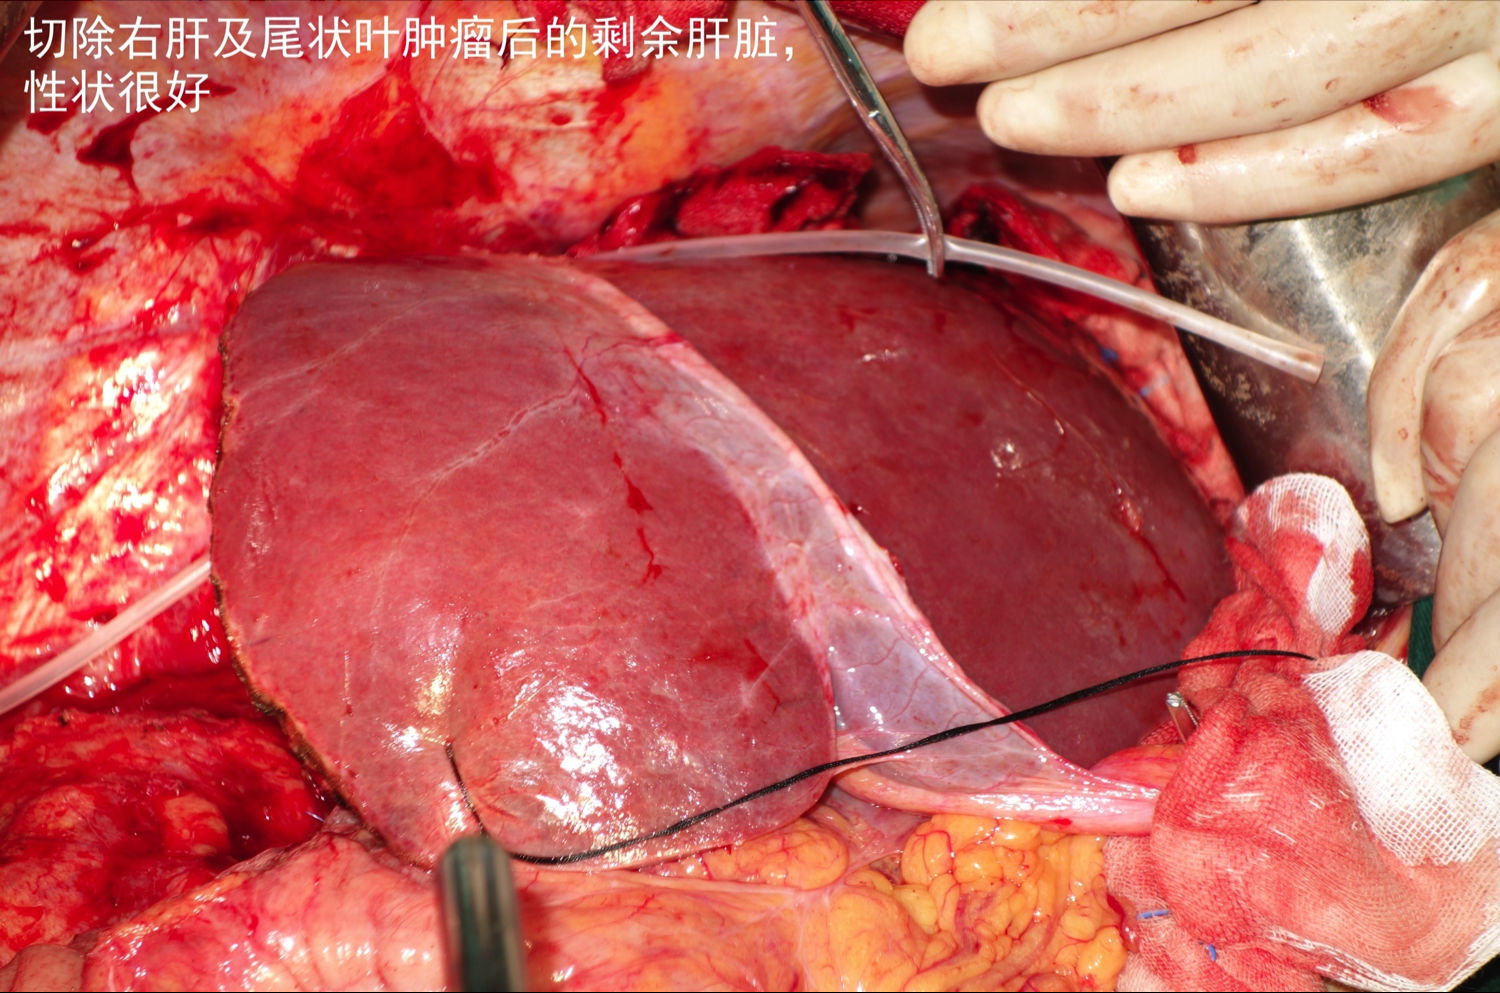 巨大尾状叶肝细胞肝癌切除术1例